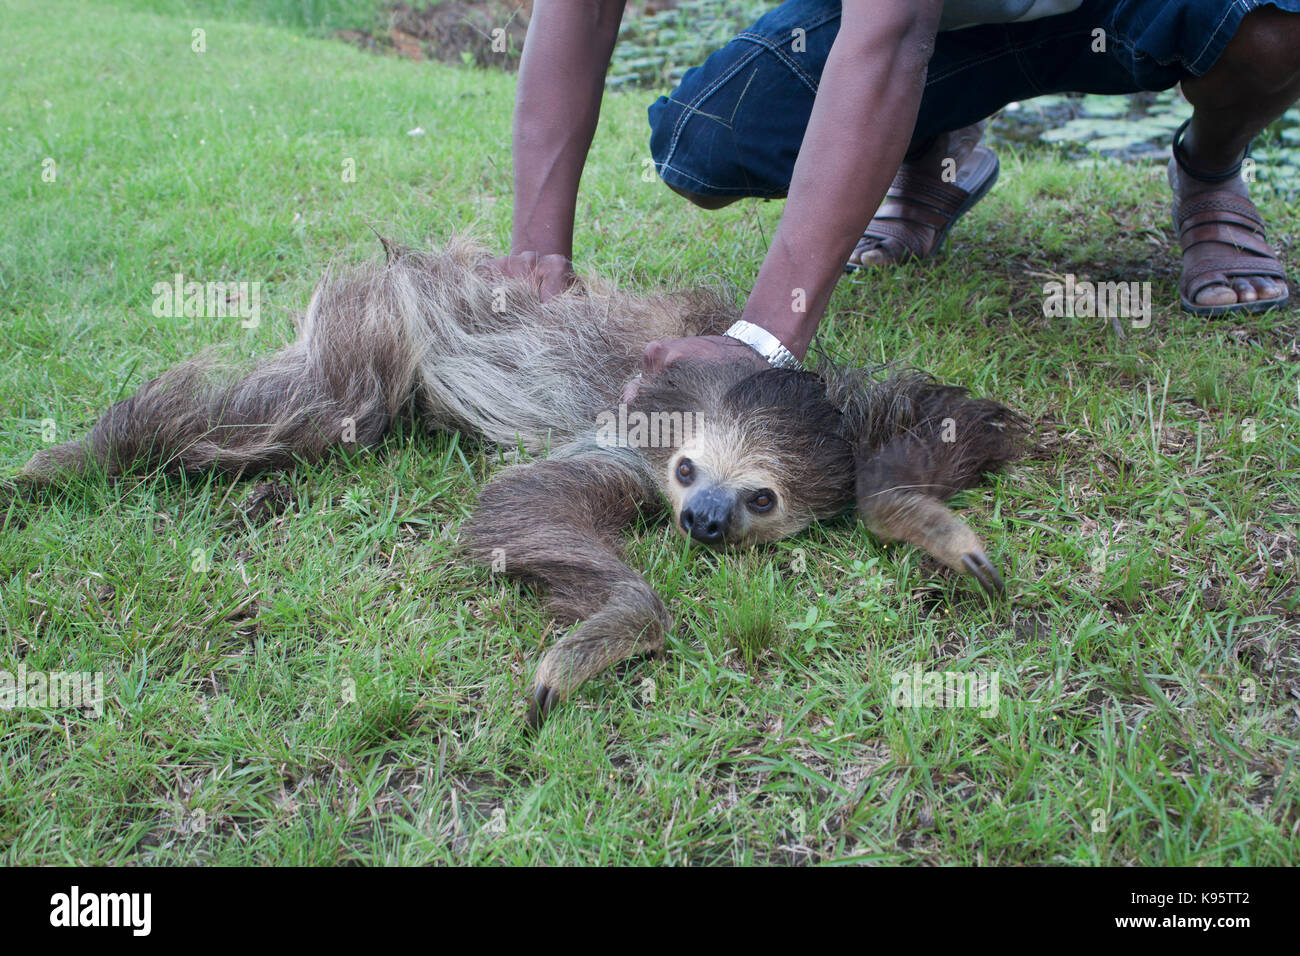 Un deux-toed sloth (Choloepus) est maintenu en position de force par un homme Banque D'Images